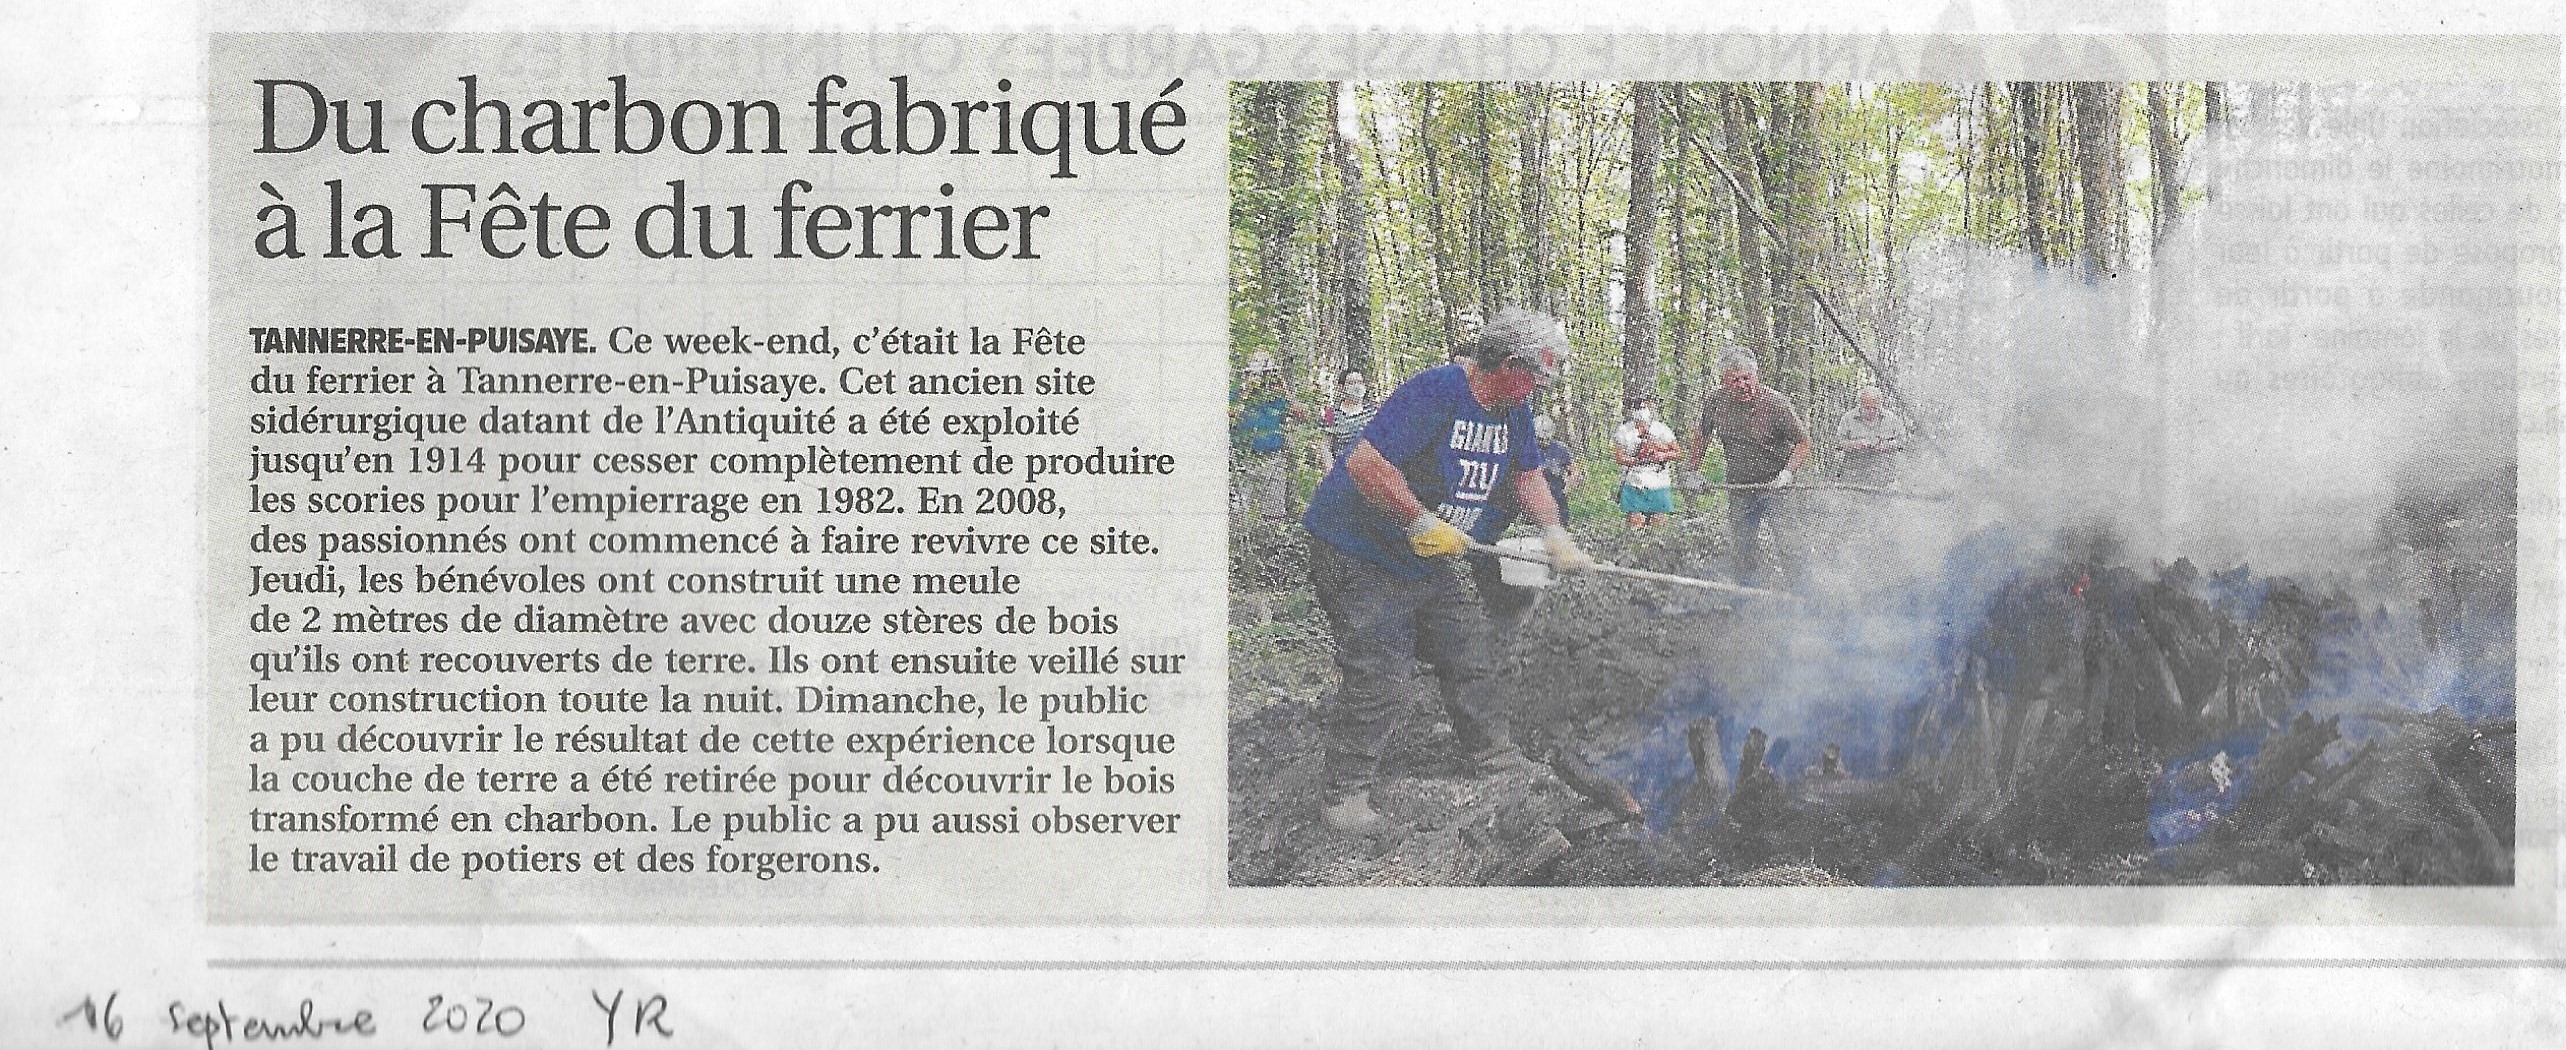 L'Yonne Républicaine, 16 septembre 2020, meule de charbon de bois